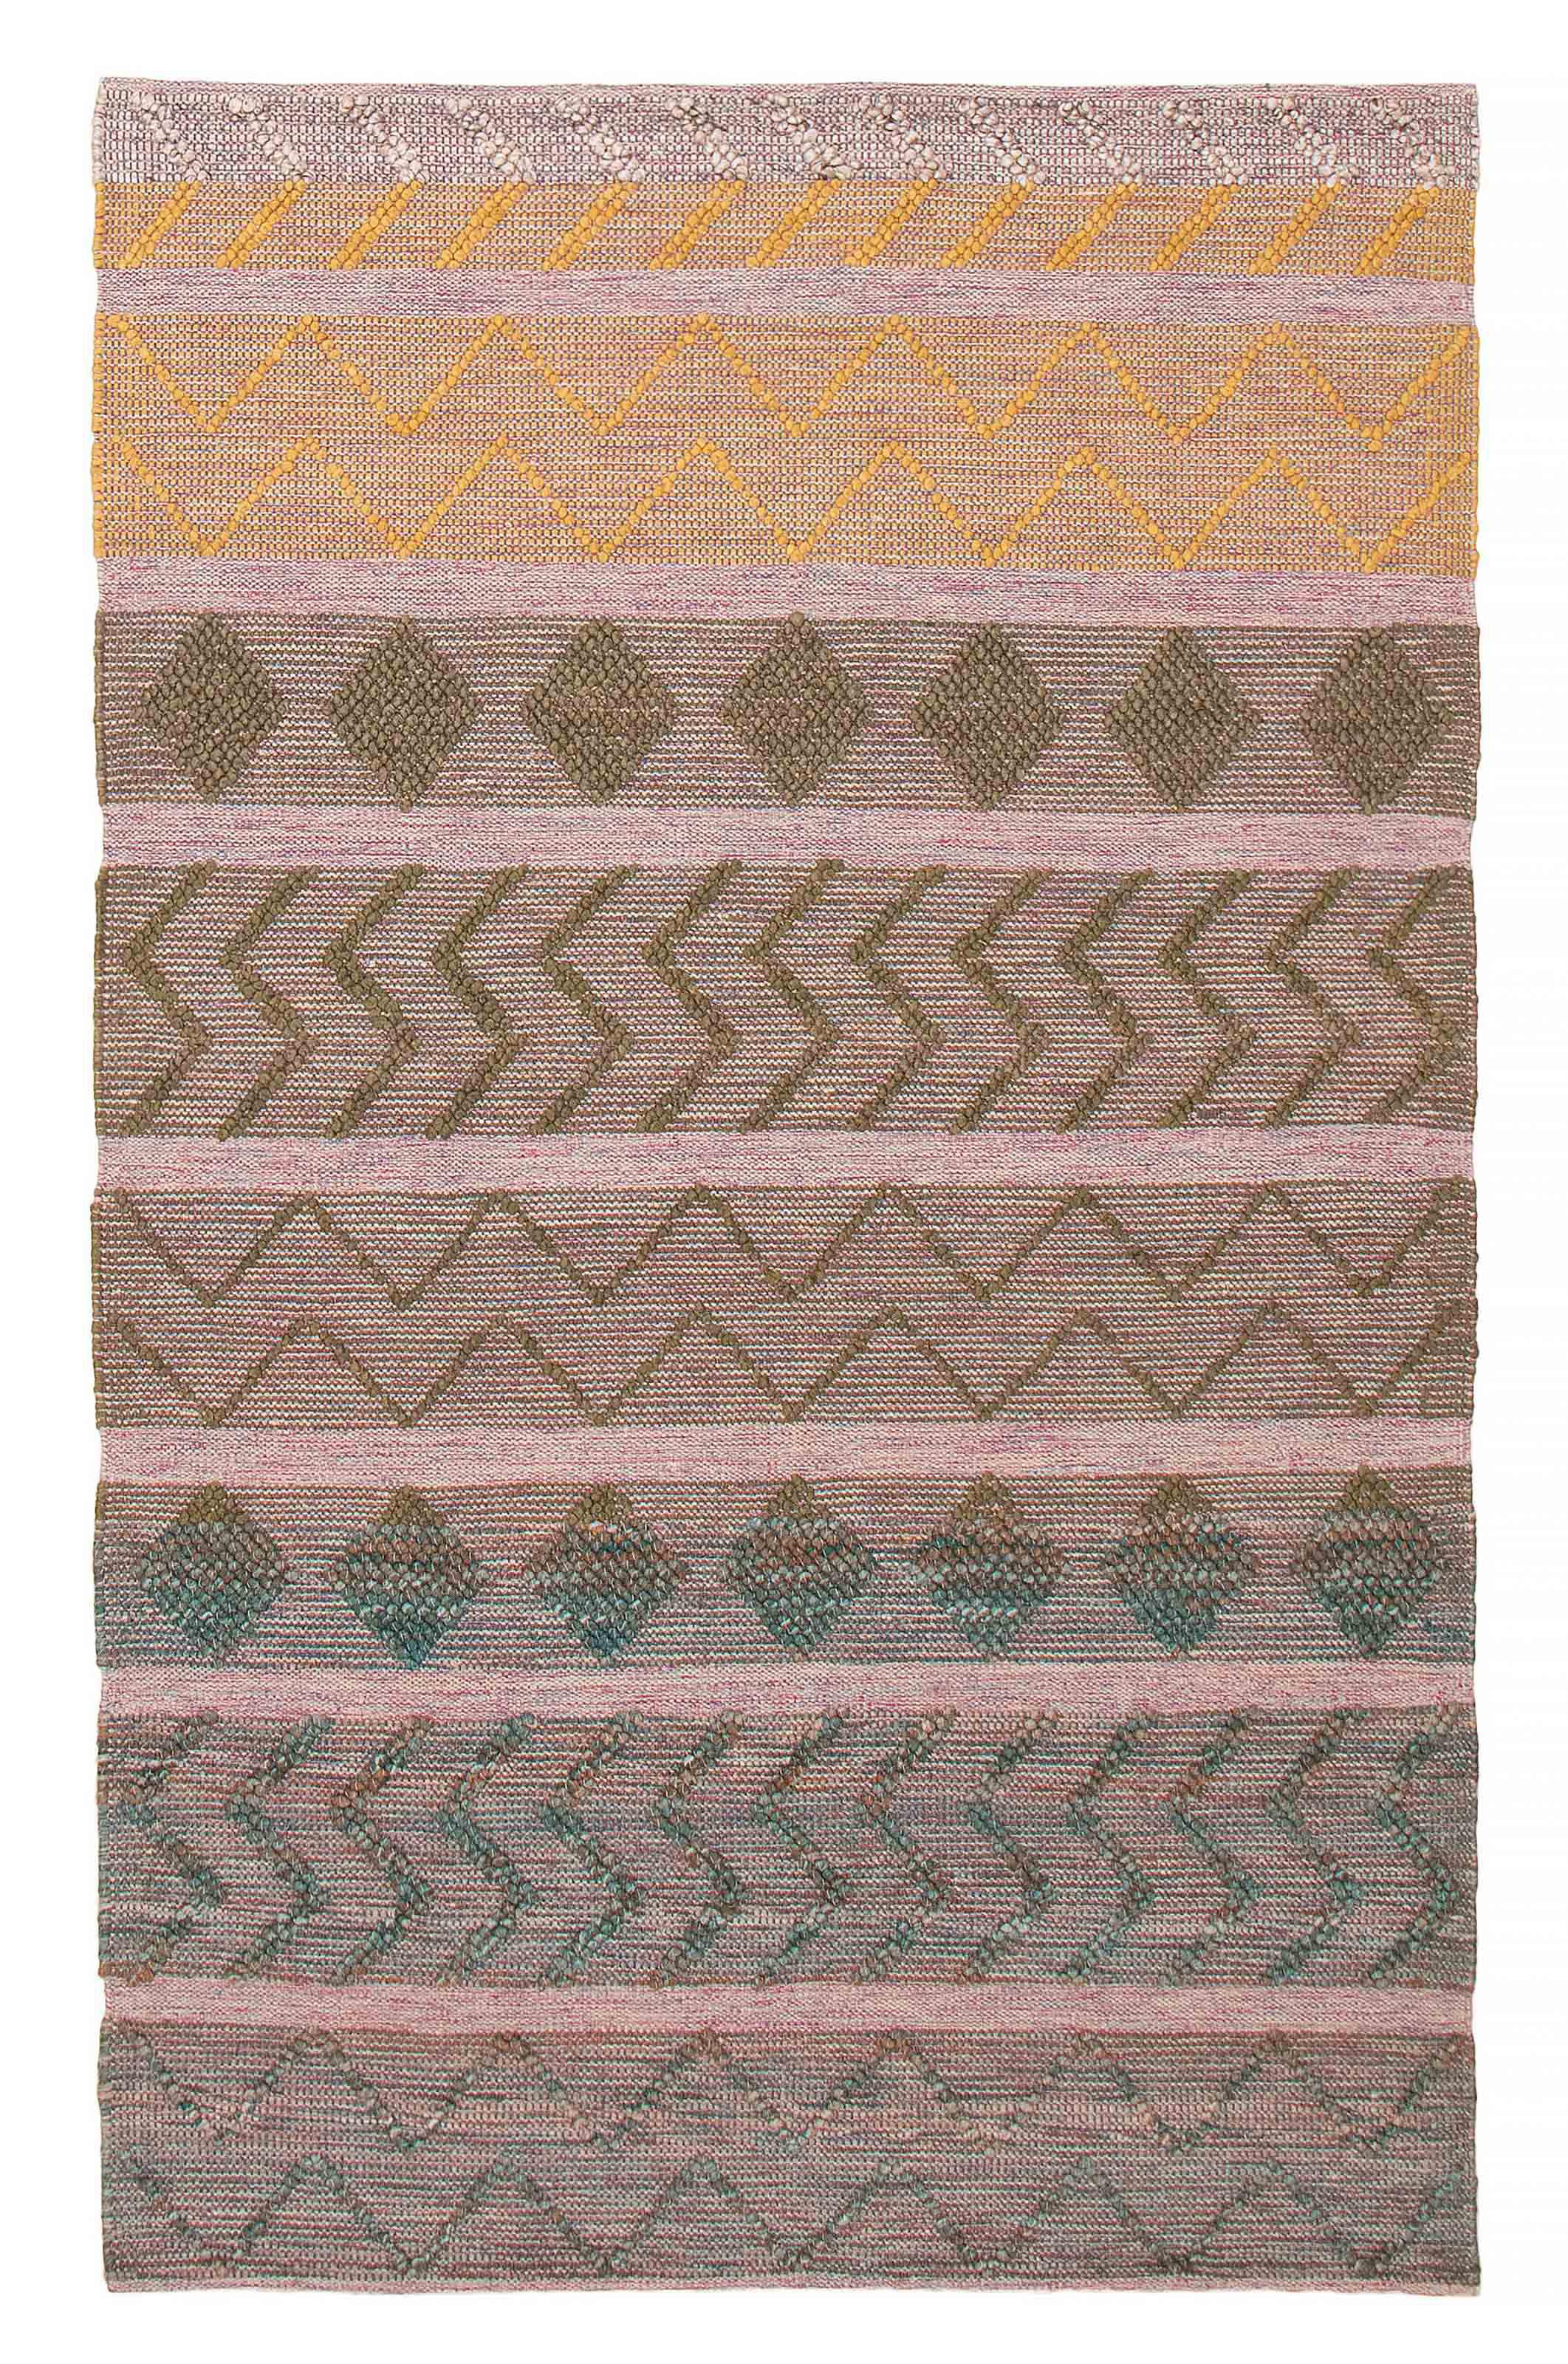 https://assets.wfcdn.com/im/11770757/compr-r85/2667/266746073/stepfon-handmade-hand-braided-wool-rug.jpg